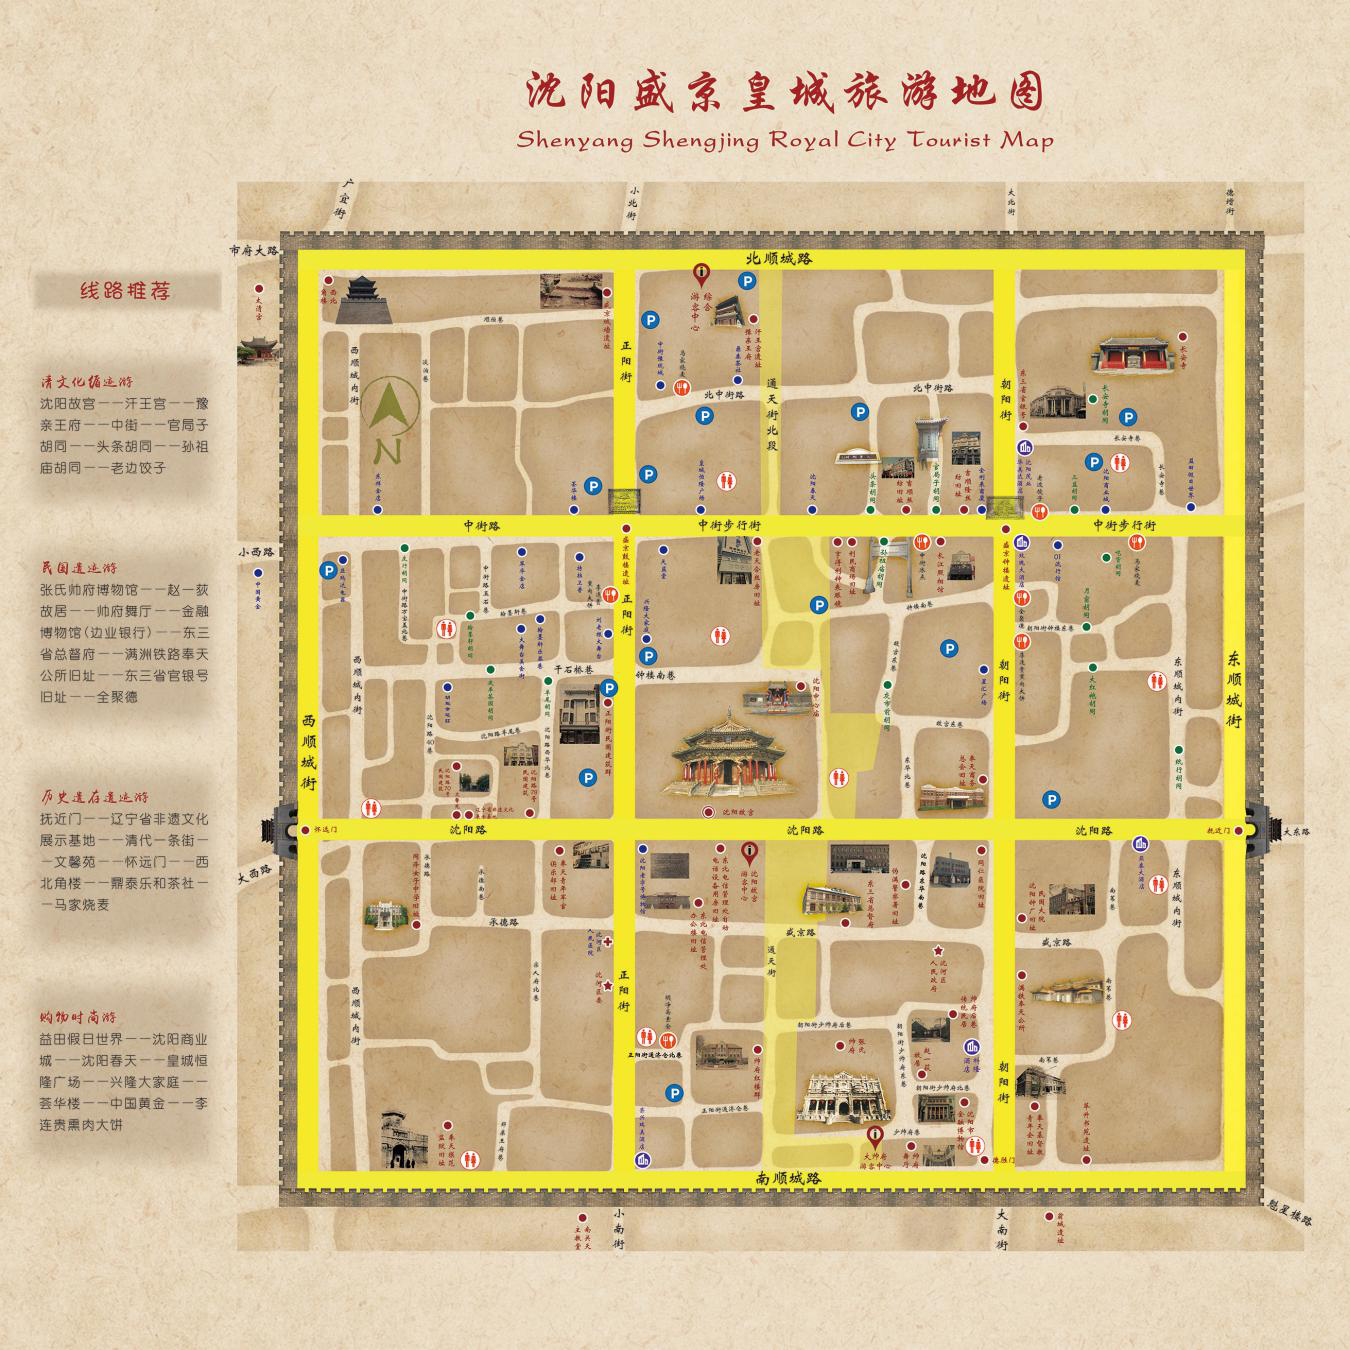 将以沈阳故宫,大帅府为核心,围绕中街步行街改造工程后的旅游,购物